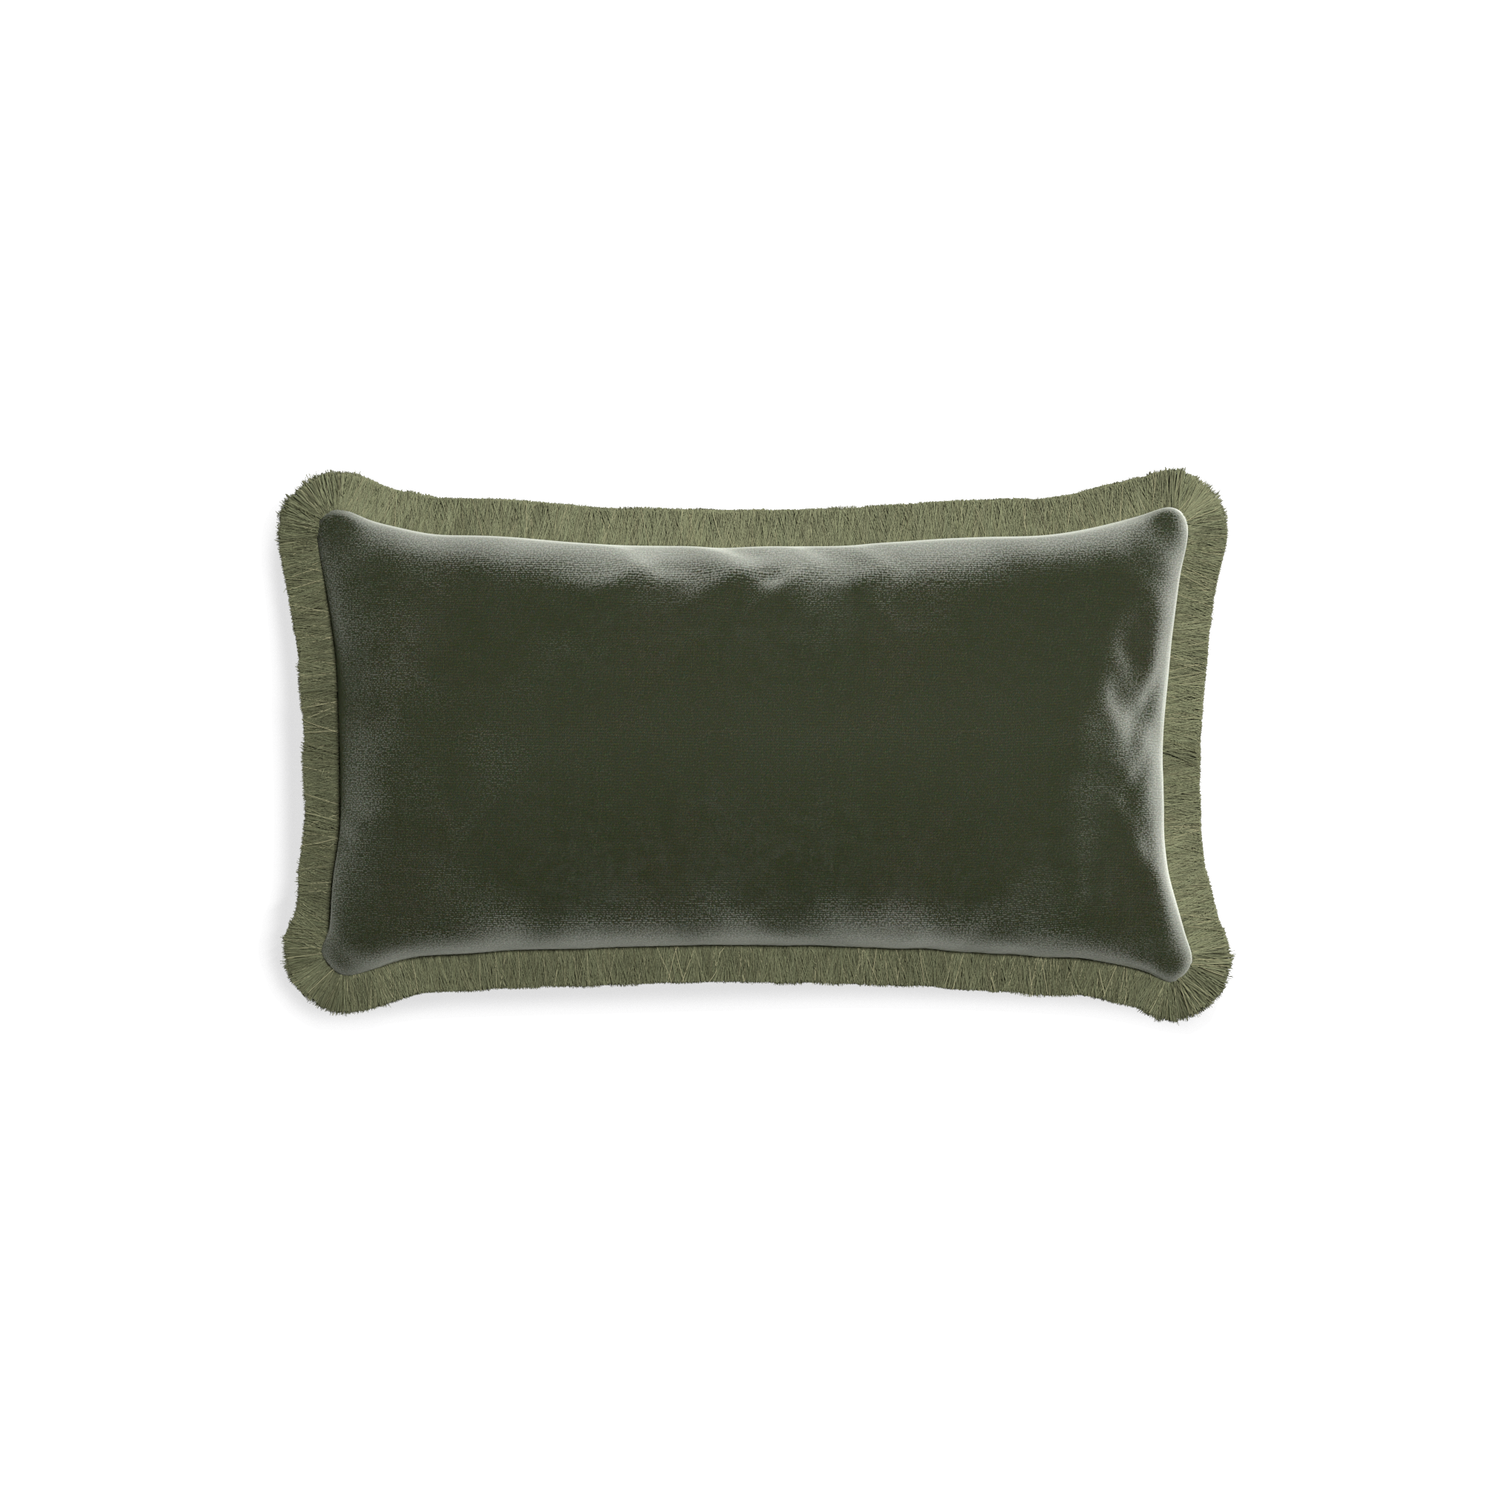 rectangle fern green velvet pillow with sage green fringe